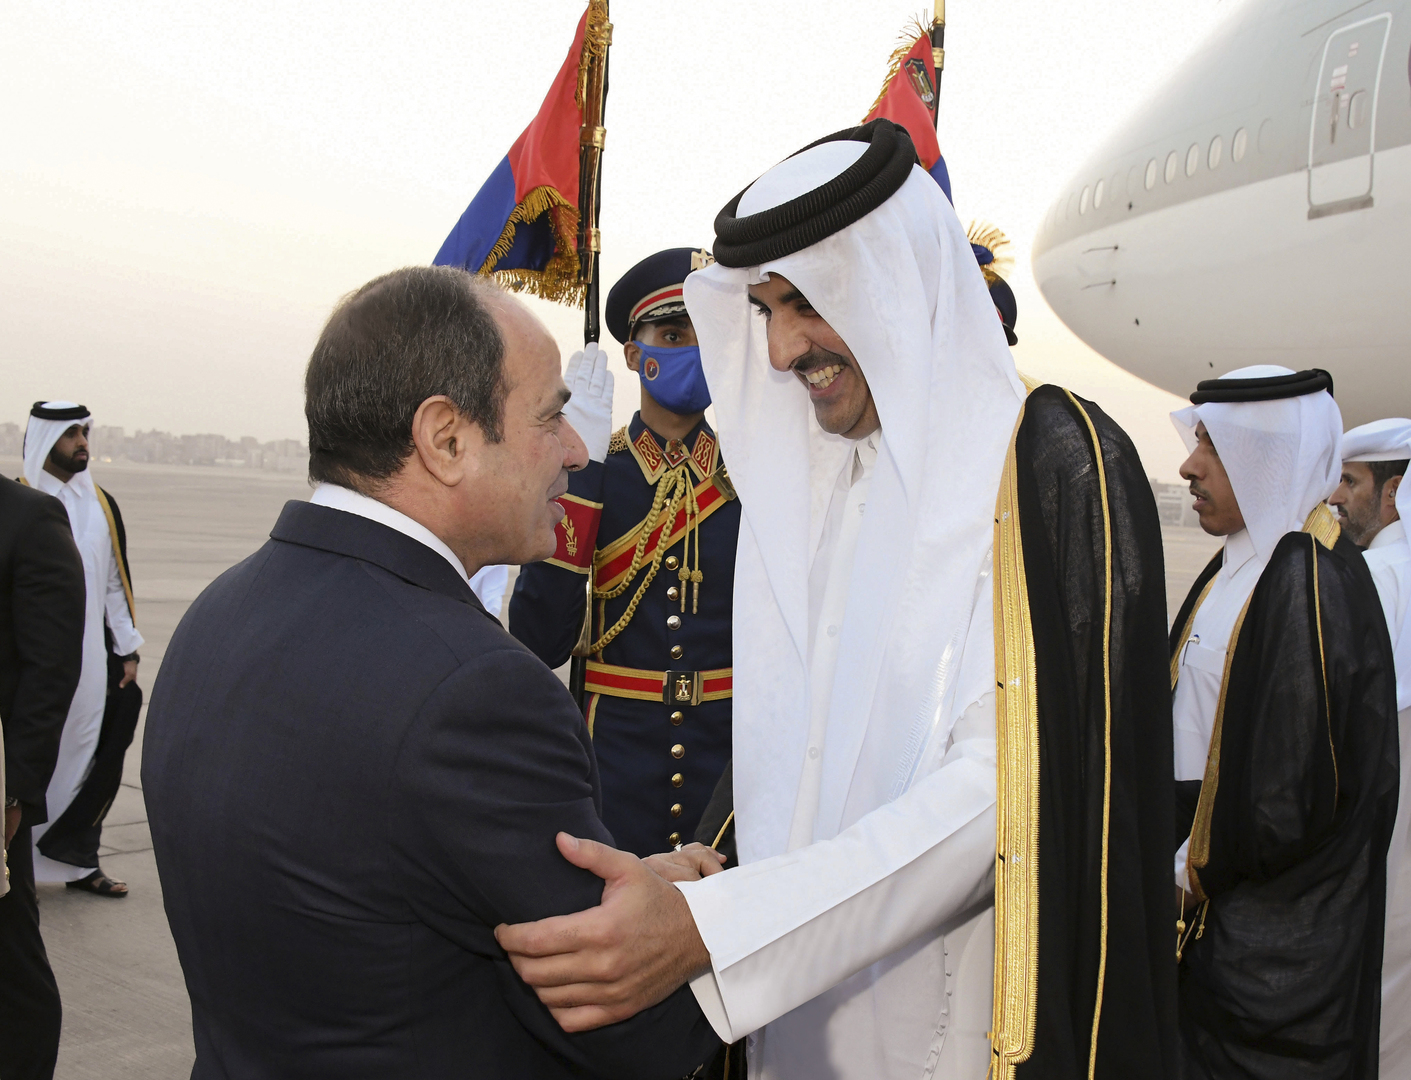 الأمير تميم بن حمد يغرد حول زيارته لمصر ولقاء السيسي